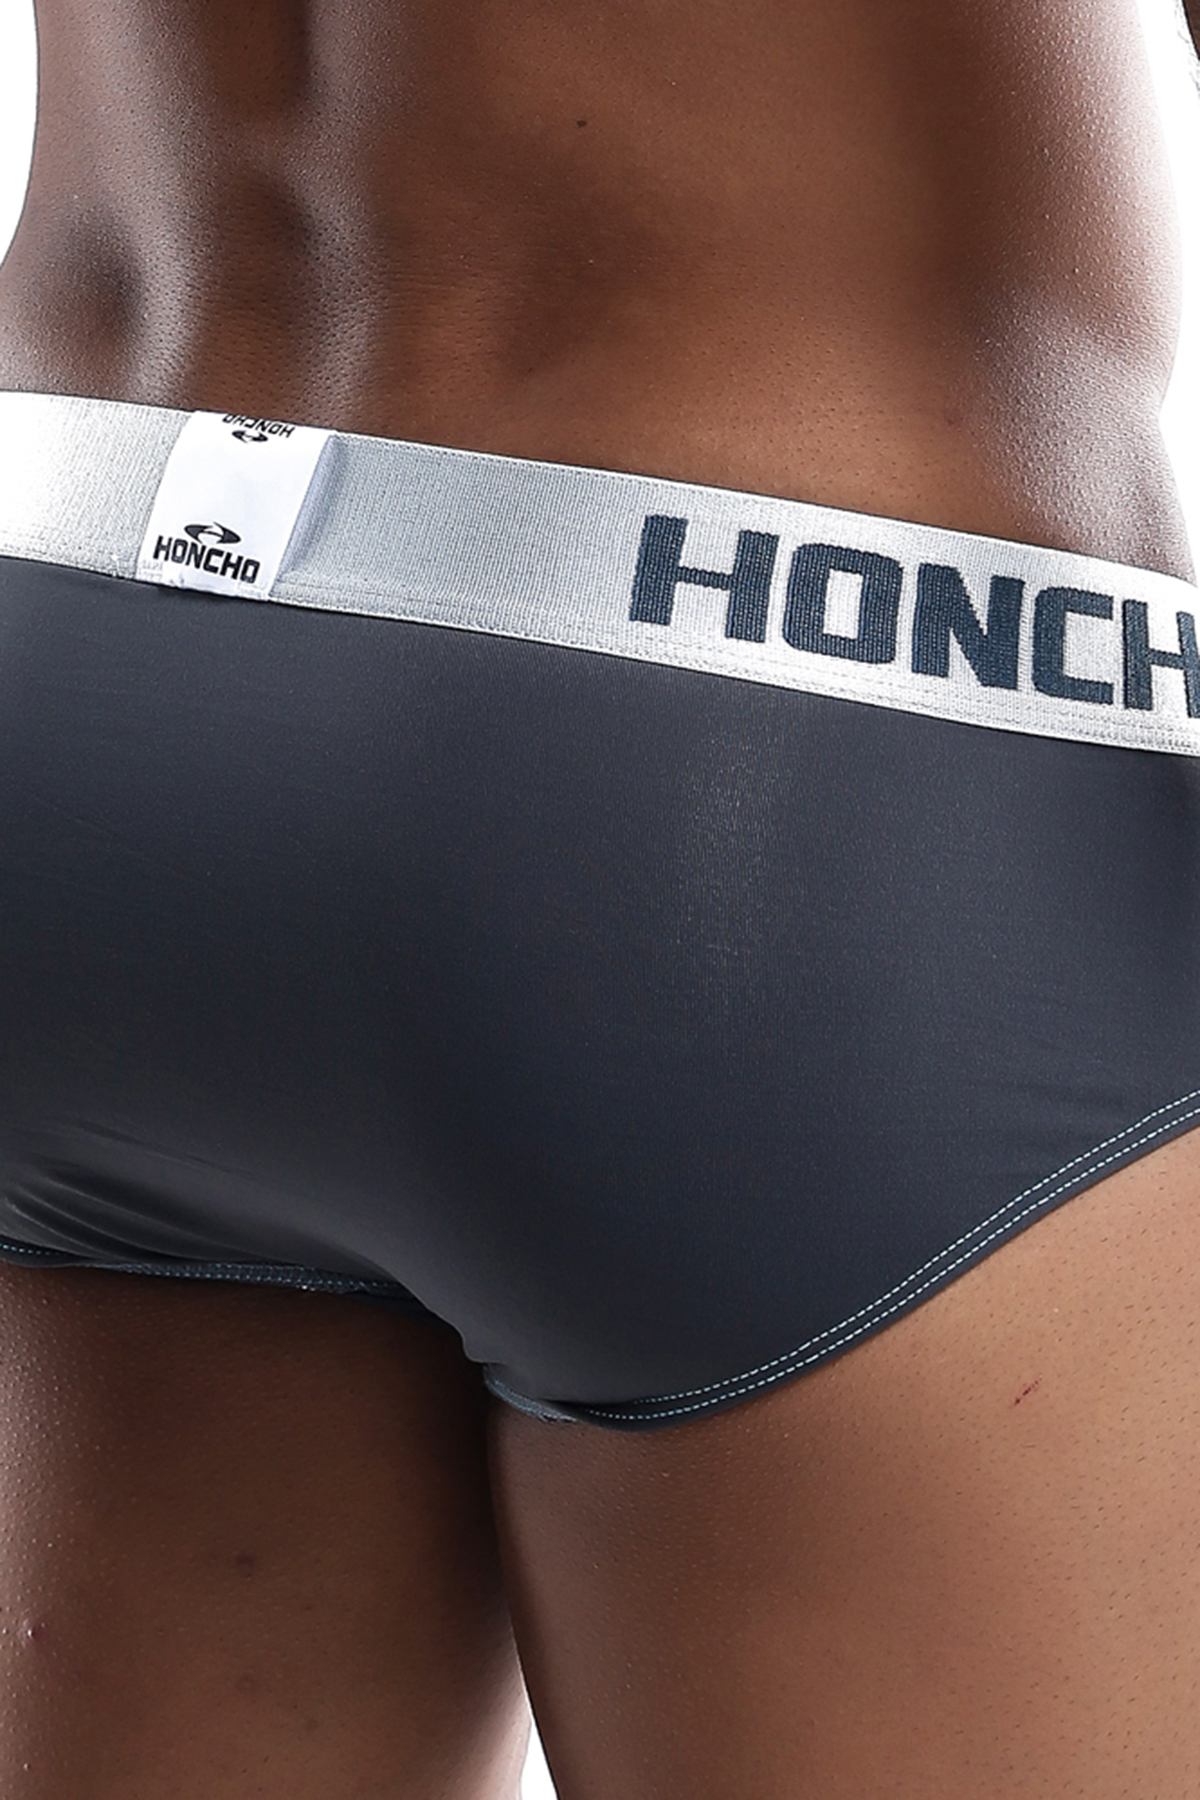 Honcho Grey HOJ011 Brief